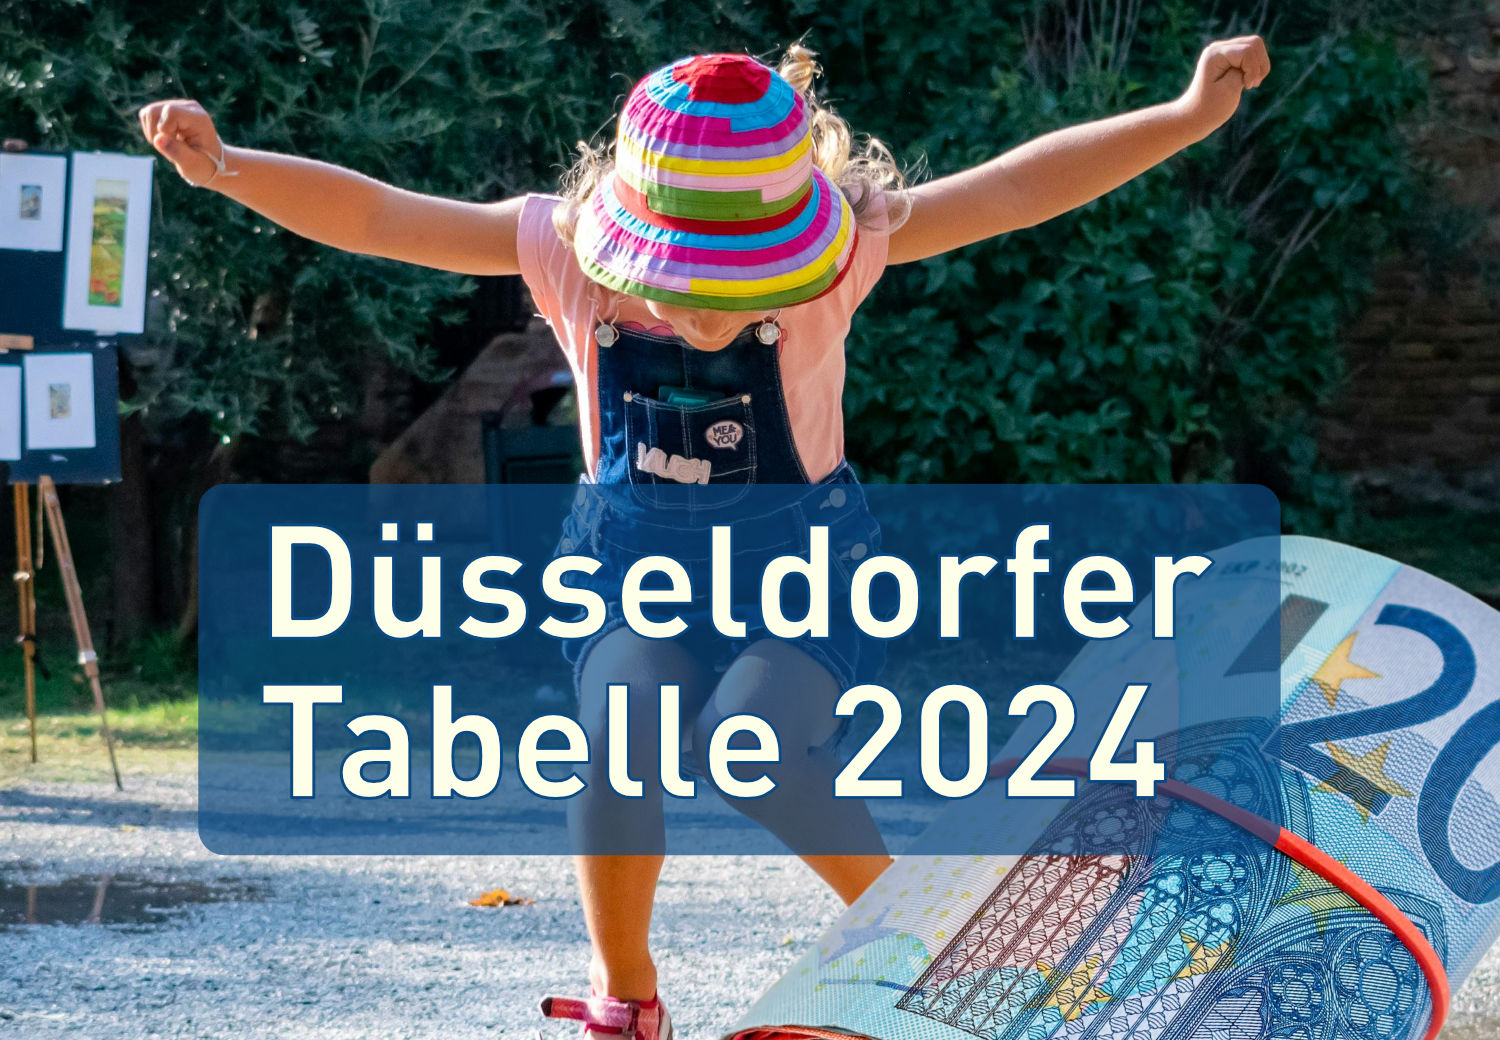 Düsseldorfer-Tabelle-2024 - Unterhalt